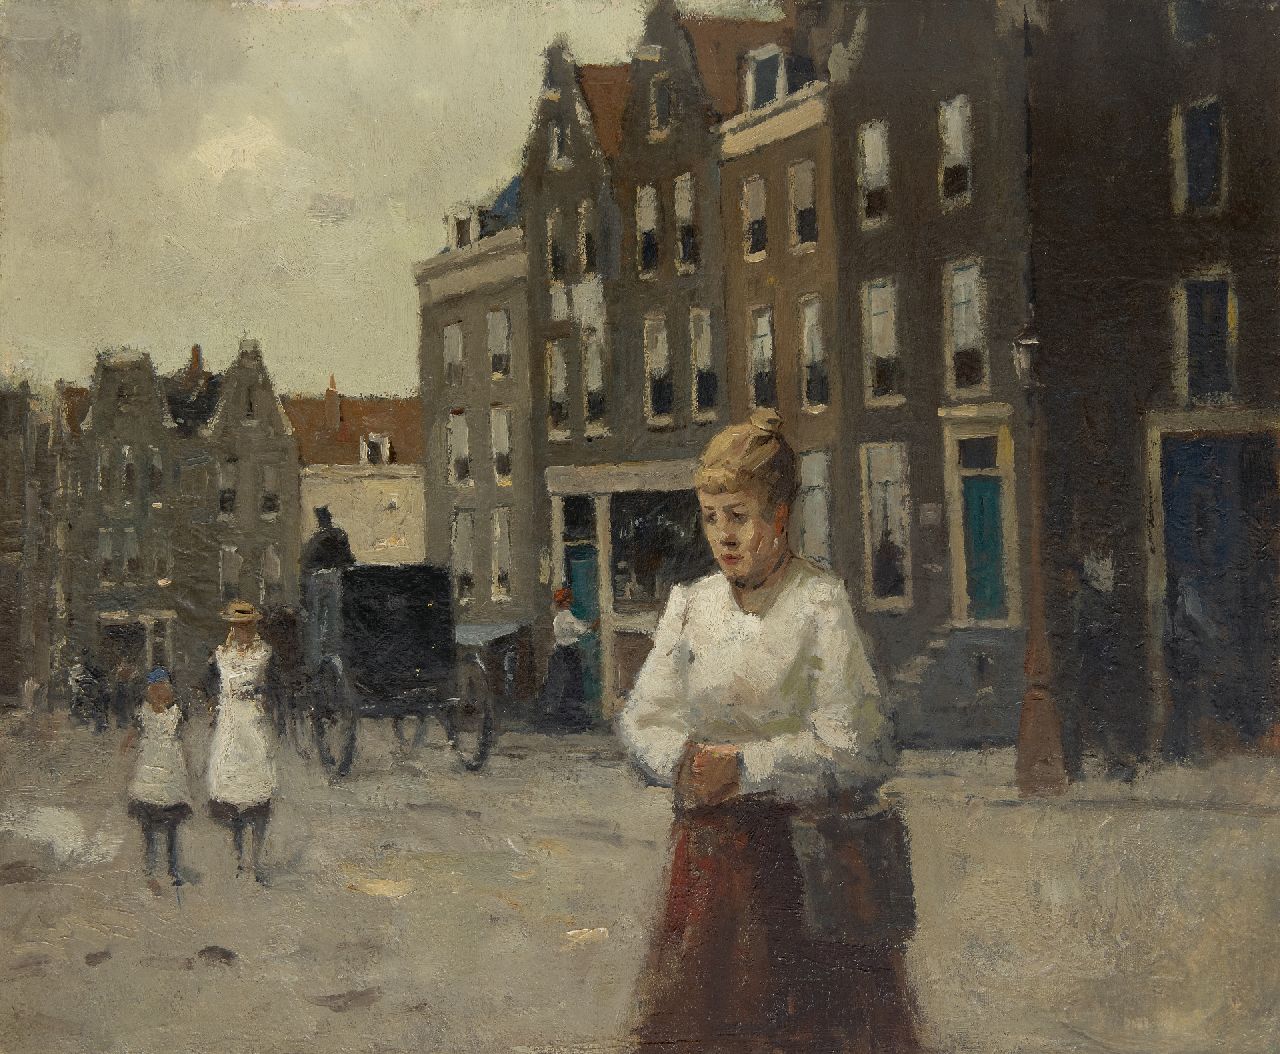 Ligtelijn E.J.  | Evert Jan Ligtelijn | Schilderijen te koop aangeboden | Stadsgezicht in Haarlem, olieverf op doek 51,1 x 60,4 cm